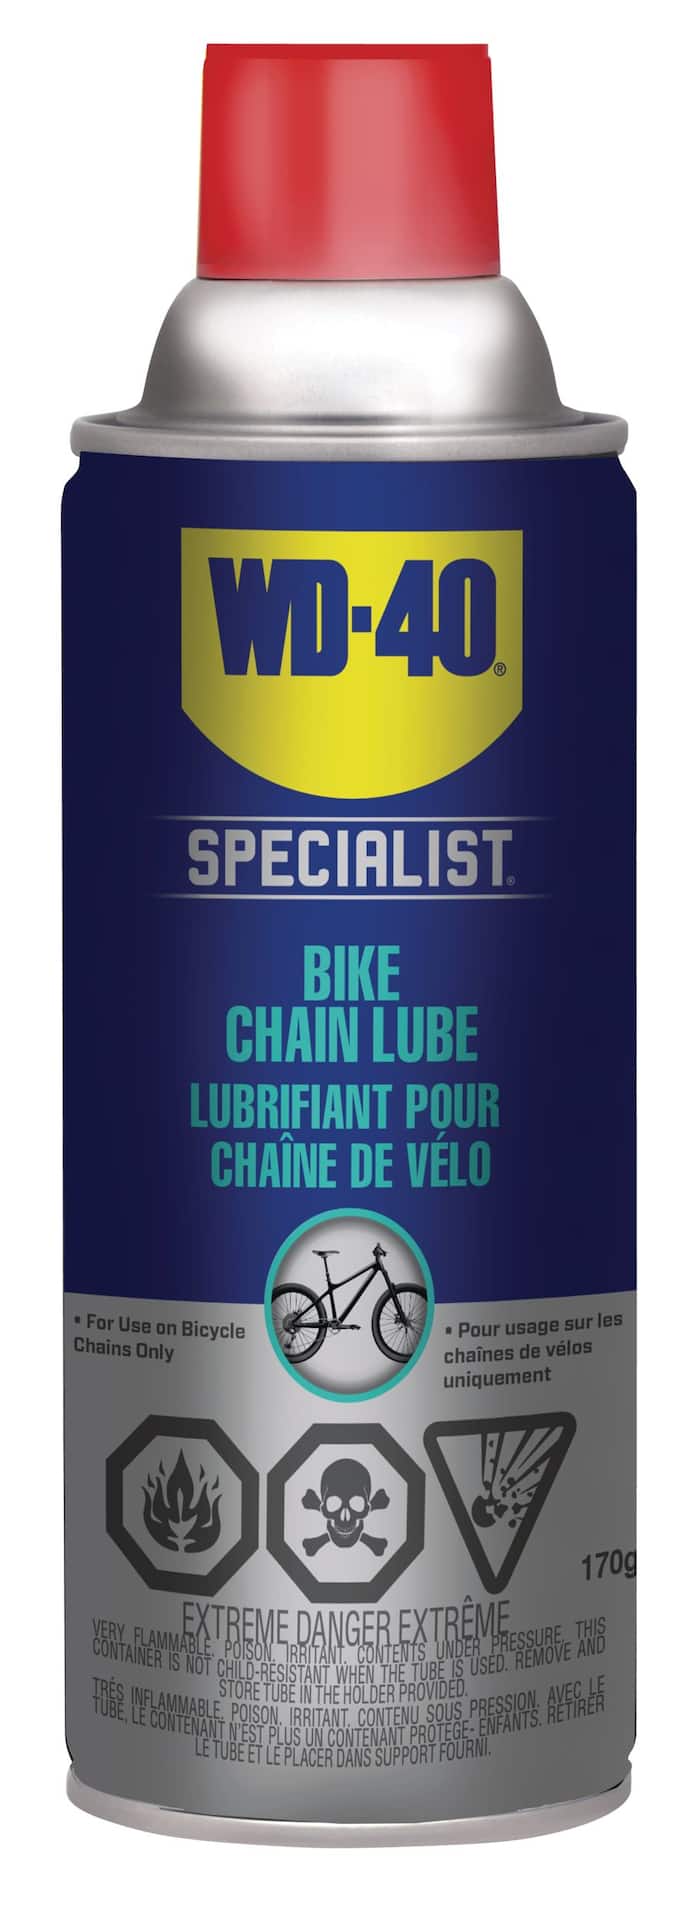 Maintenance et Entretien Velo WD-40 Bike Lubrifiant Chaîne au PTFE